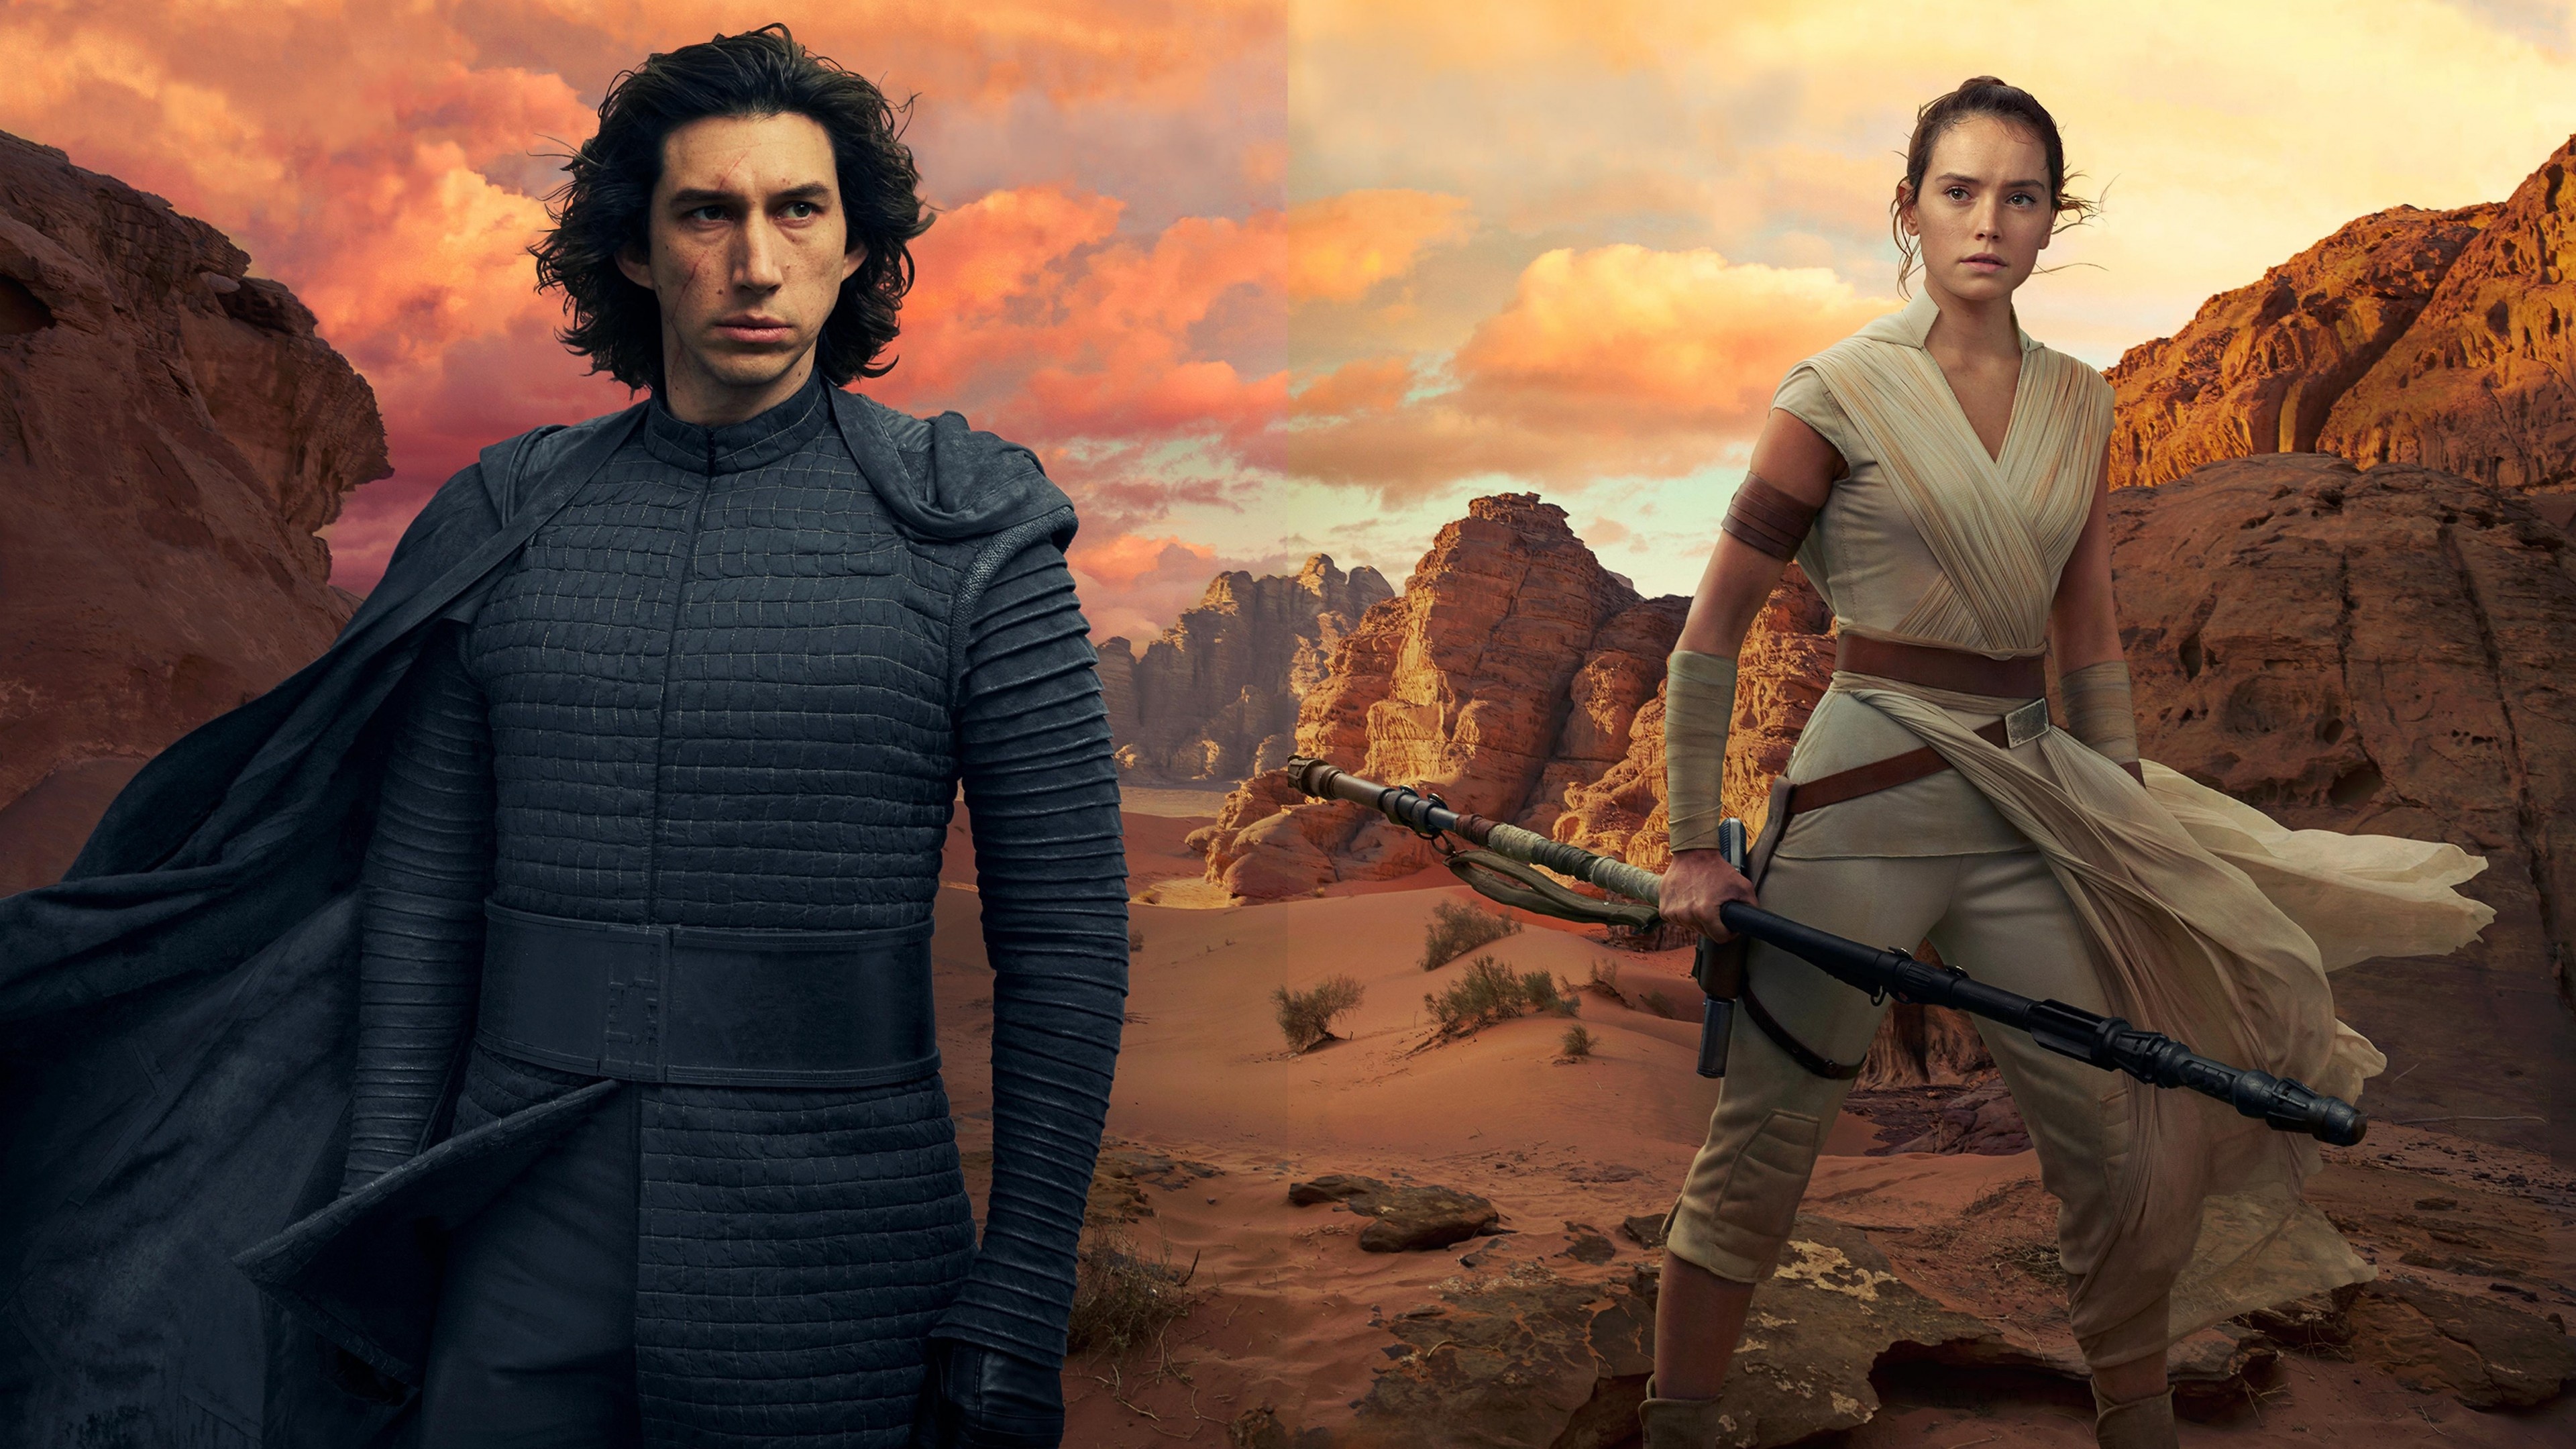 Star Wars: The Rise Of Skywalker: Adam Driver as Ben Solo, Kylo Ren and Ren Daisy Ridley as Rey. 3840x2160 4K Wallpaper.